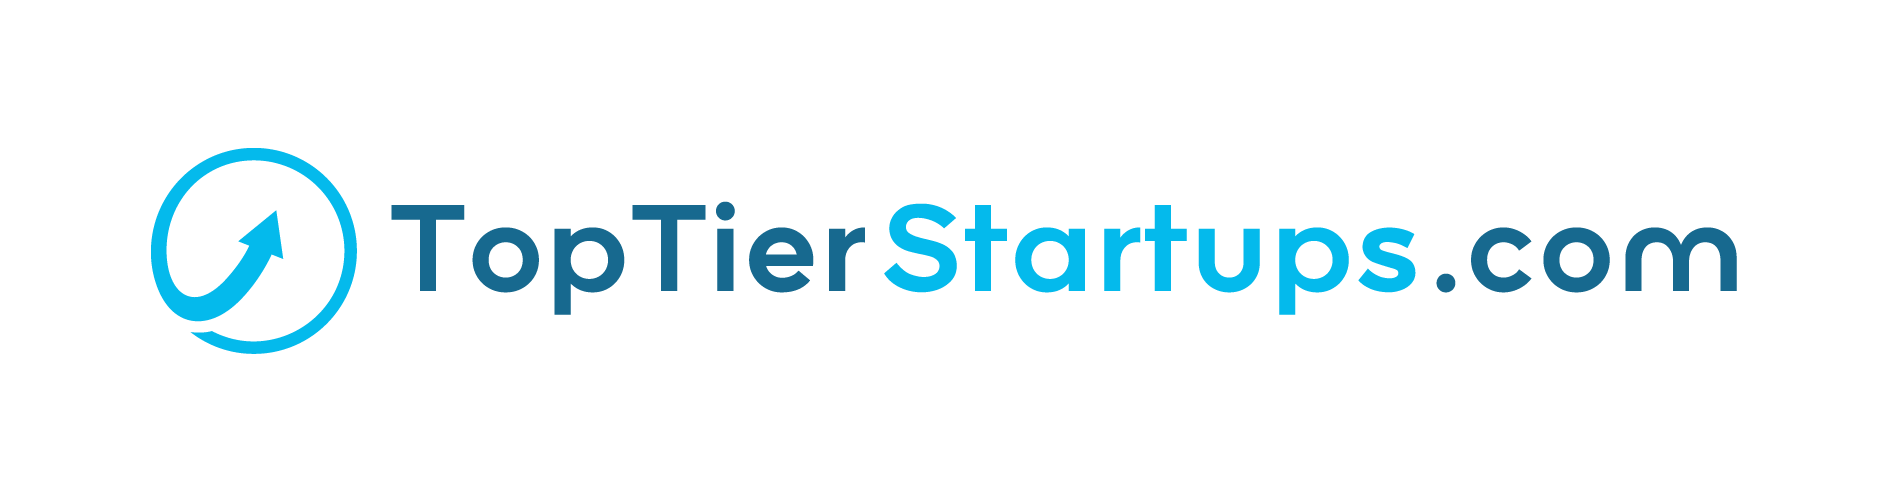 Top Tier Startups logo